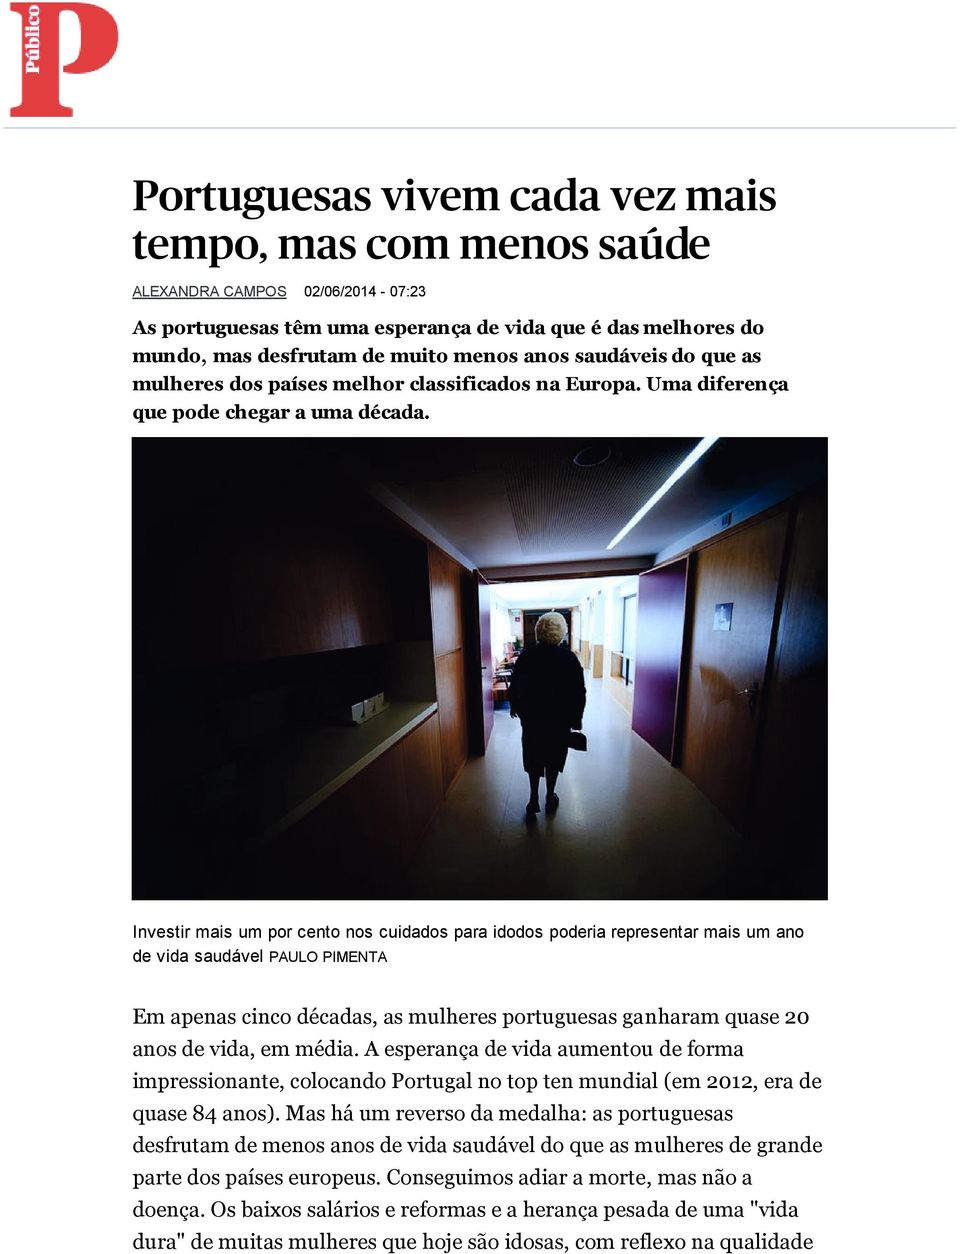 Investir mais um por cento nos cuidados para idodos poderia representar mais um ano de vida saudável PAULO PIMENTA Em apenas cinco décadas, as mulheres portuguesas ganharam quase 20 anos de vida, em